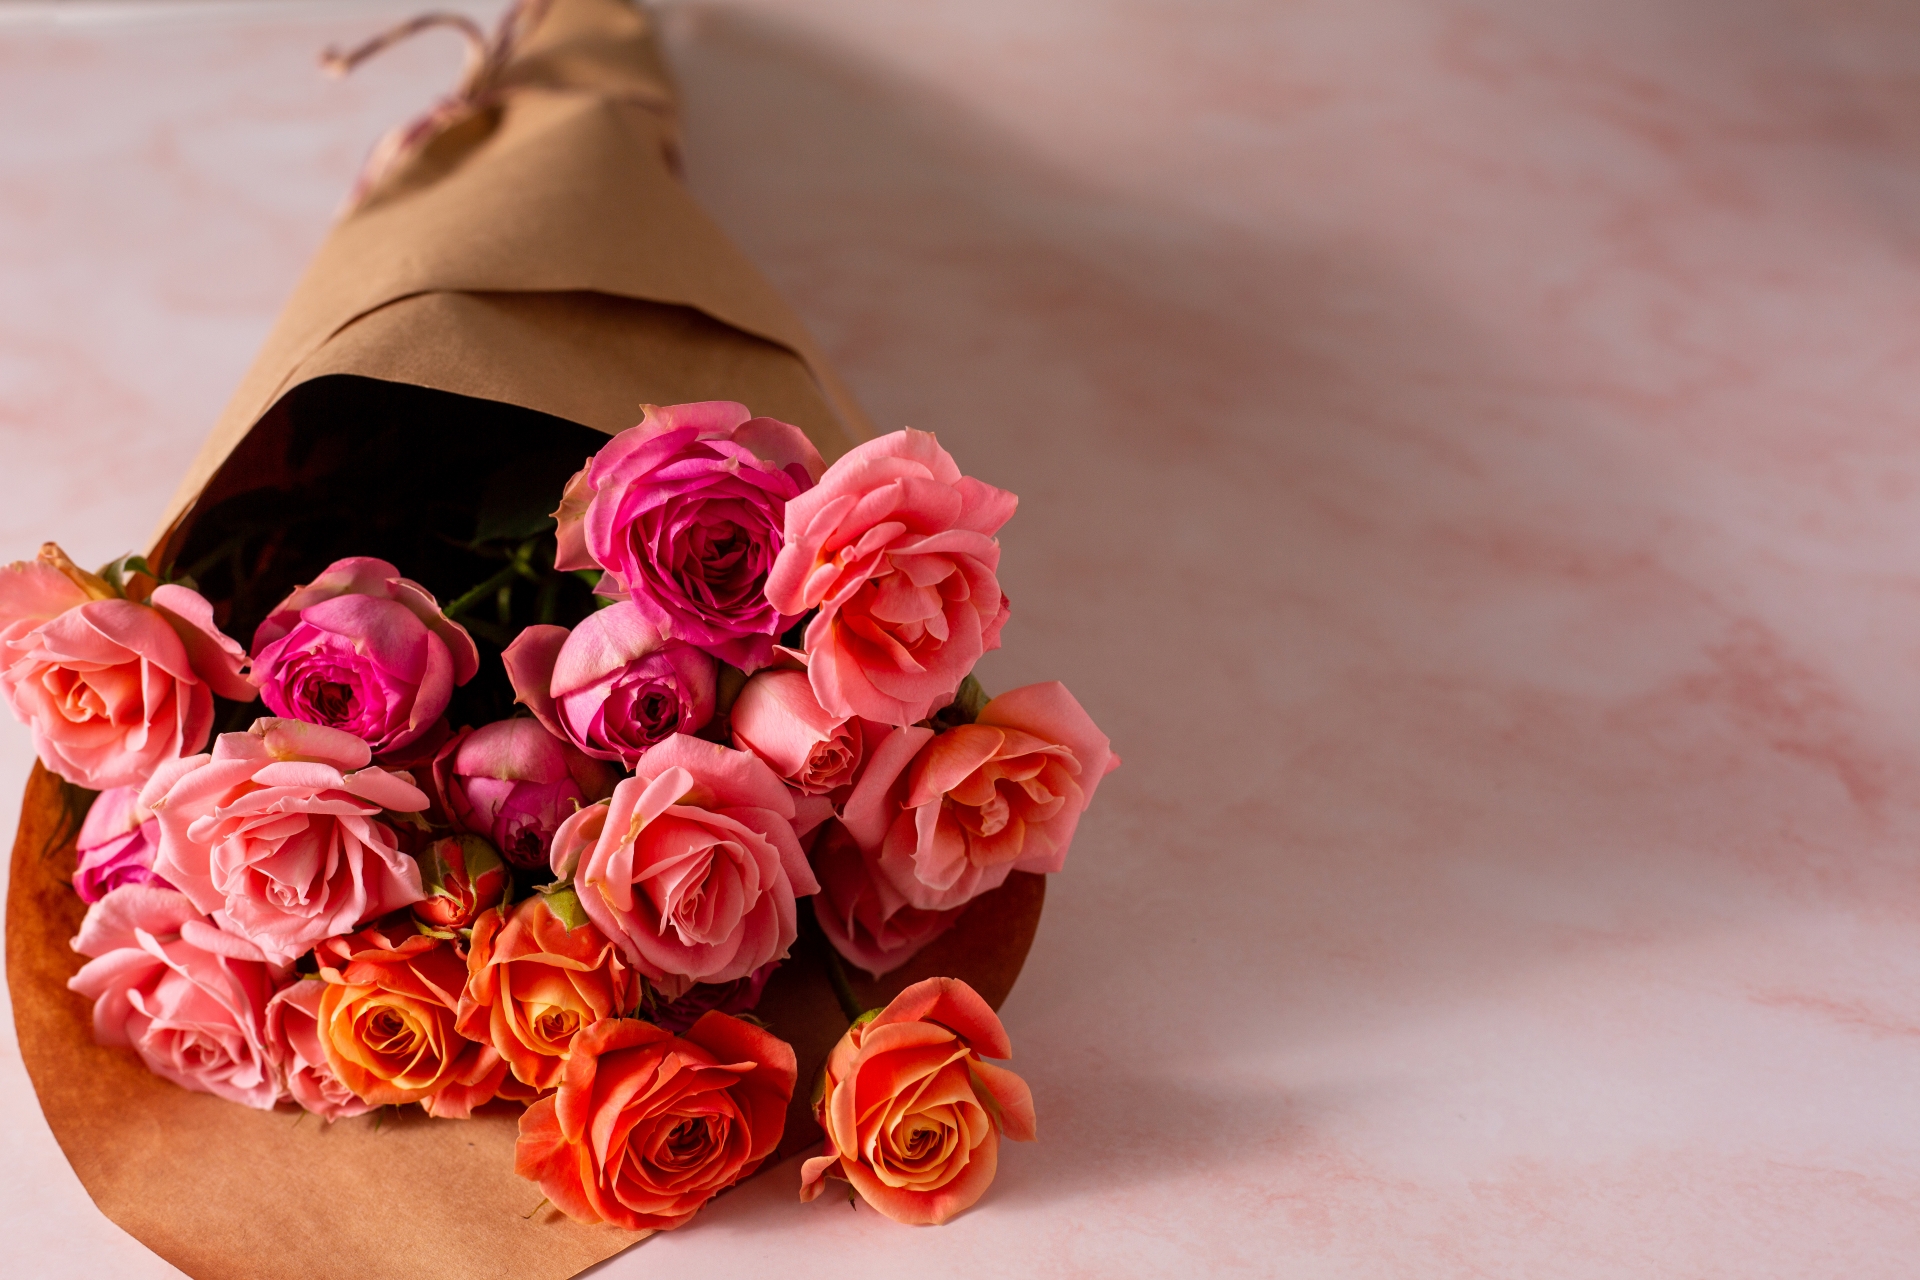 プロポーズで渡すバラの花束 本数によって違う意味が スタッフブログ